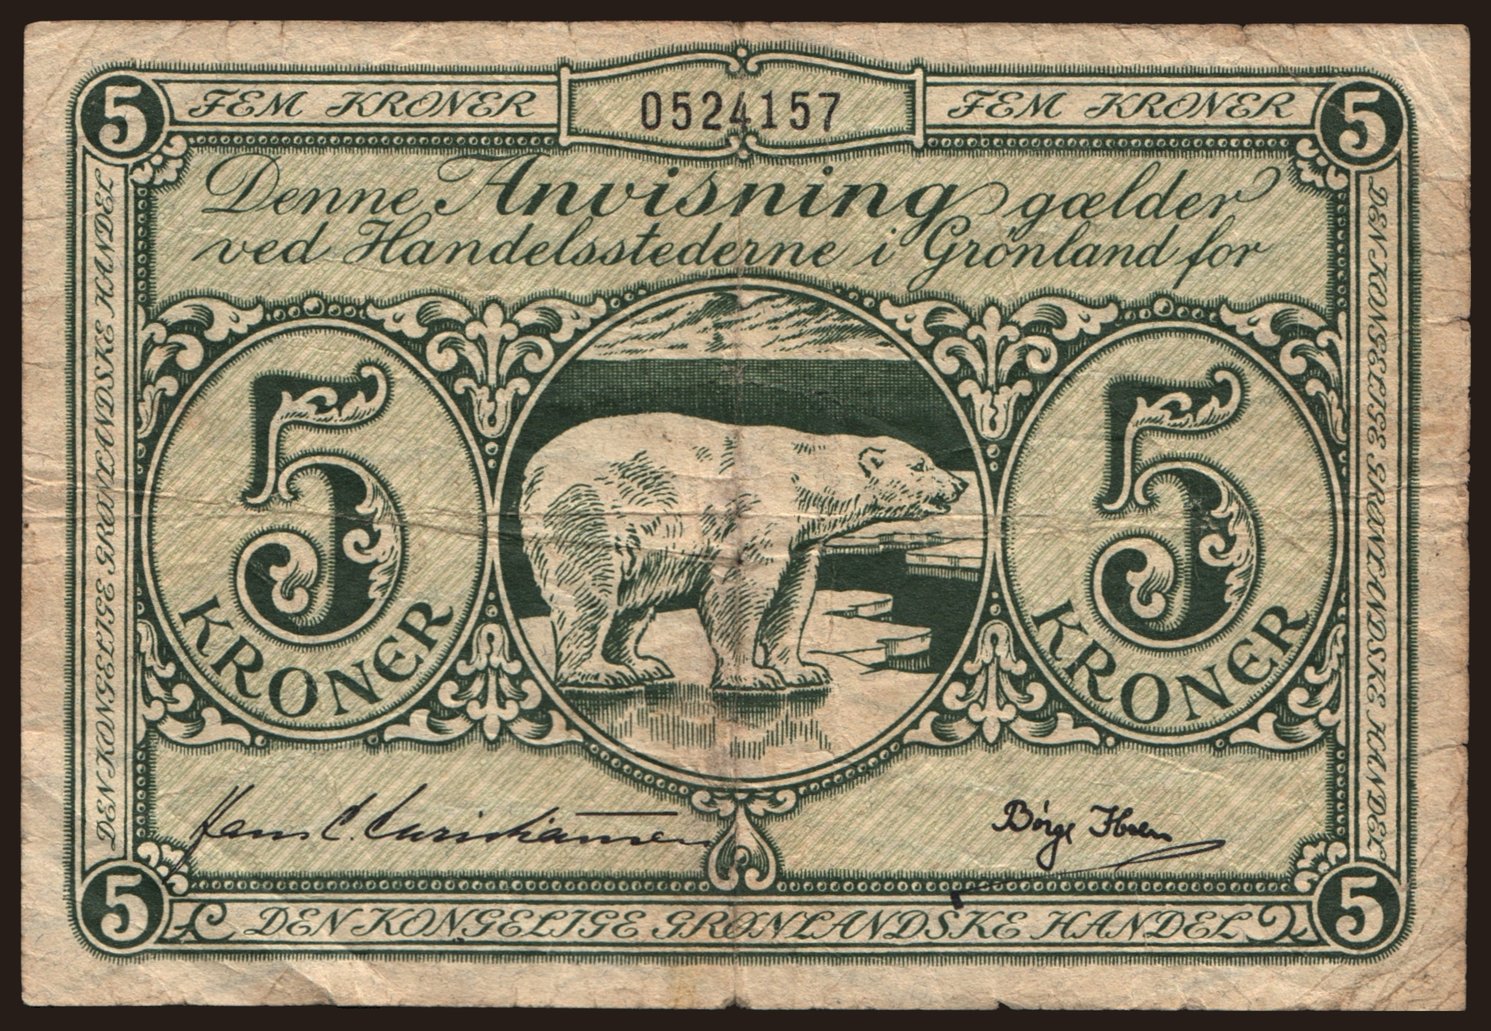 5 kroner, 1953